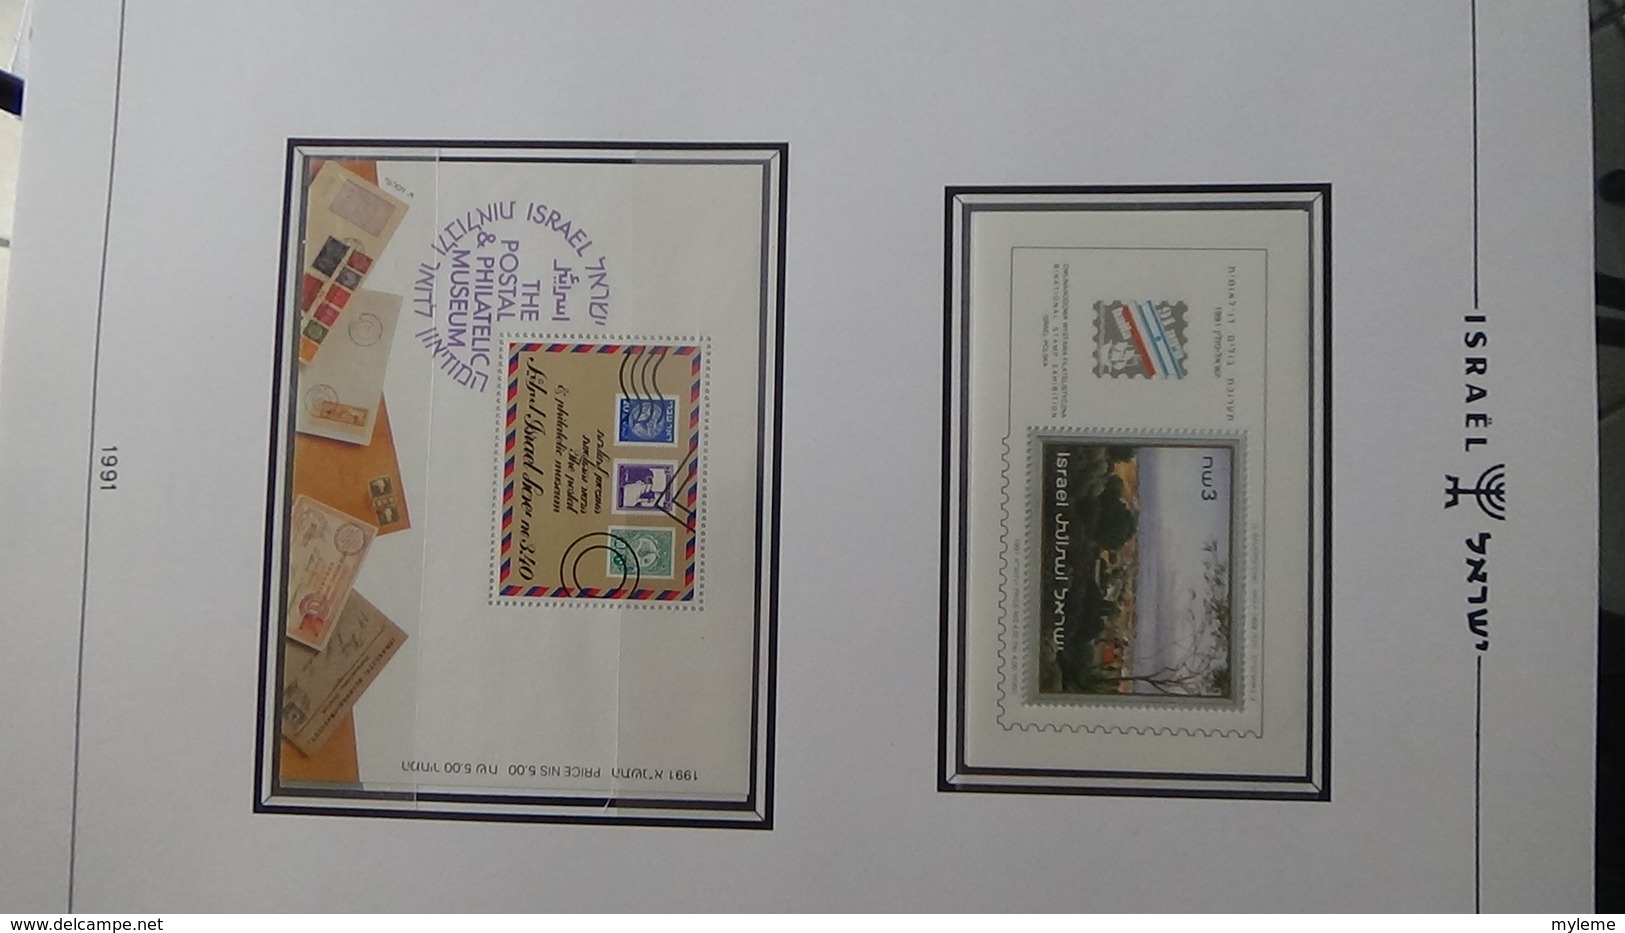 Grosse collection Israël ** + enveloppes Noël en classeur SCHEPS vol 2 de 1987 à 1993. Belle qualité !!!